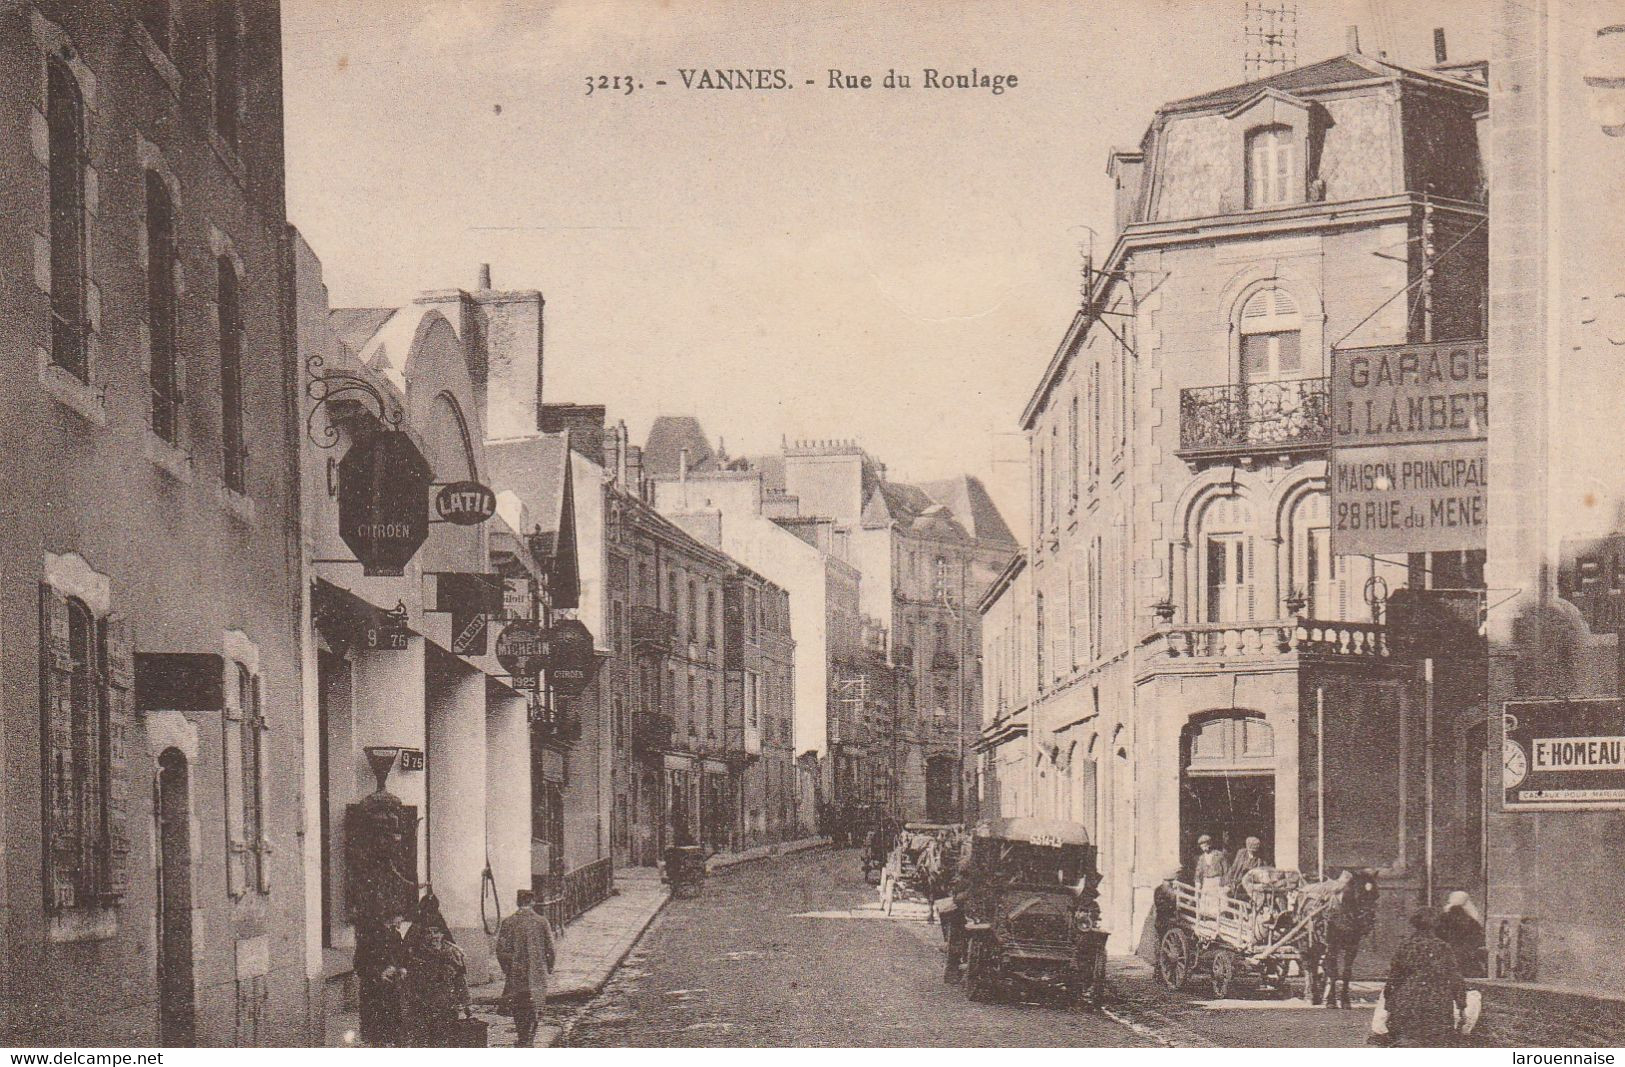 Vannes Rue du Roulage